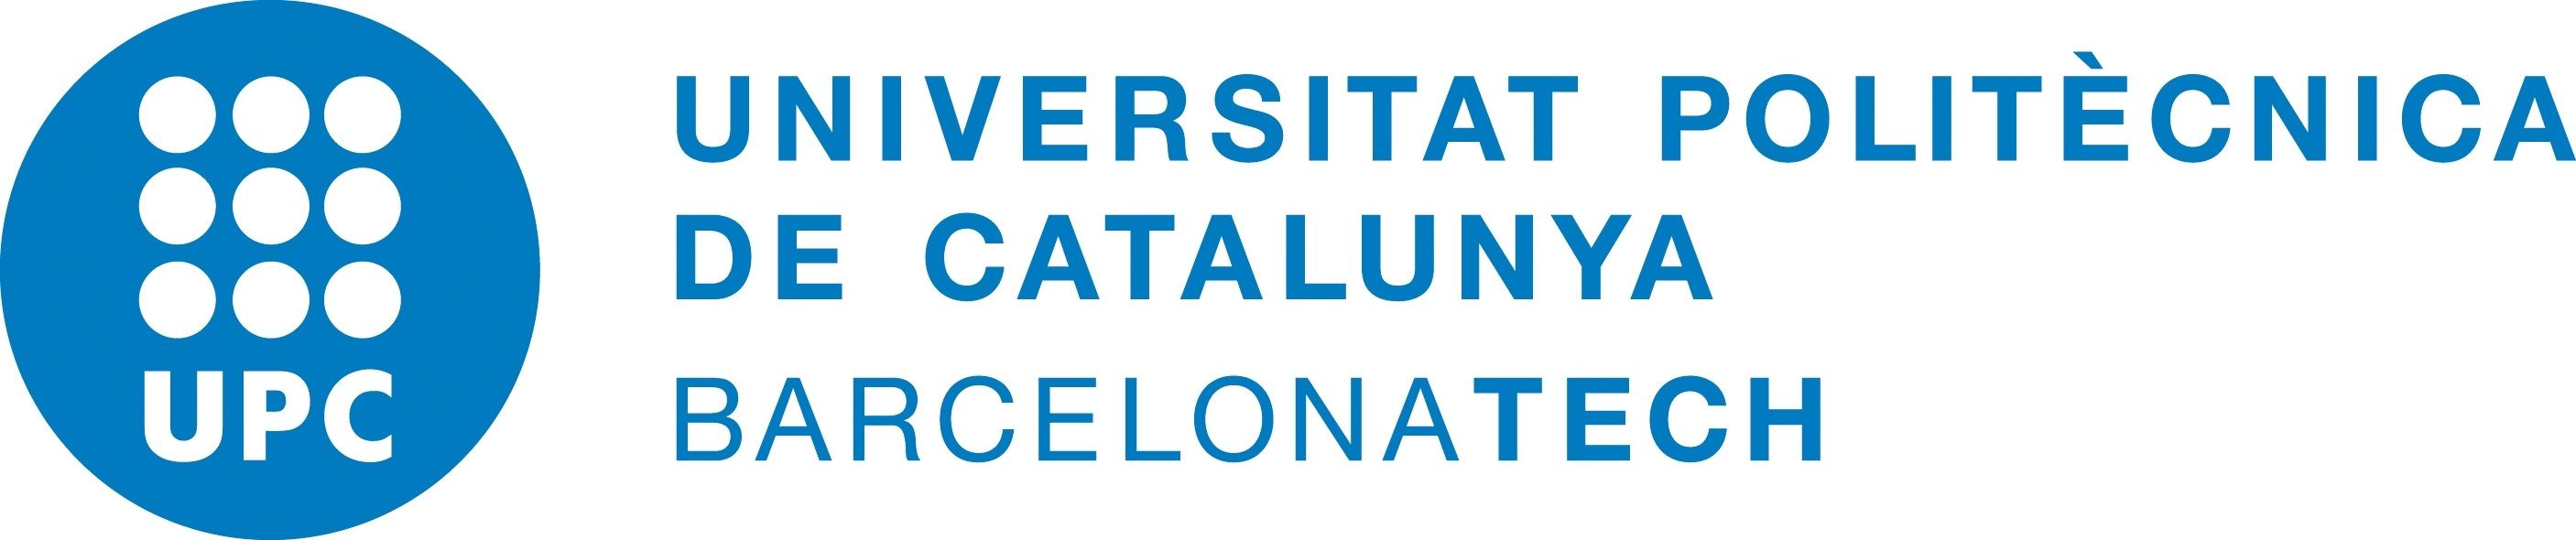 logo Universitat Politècnica de Catalunya